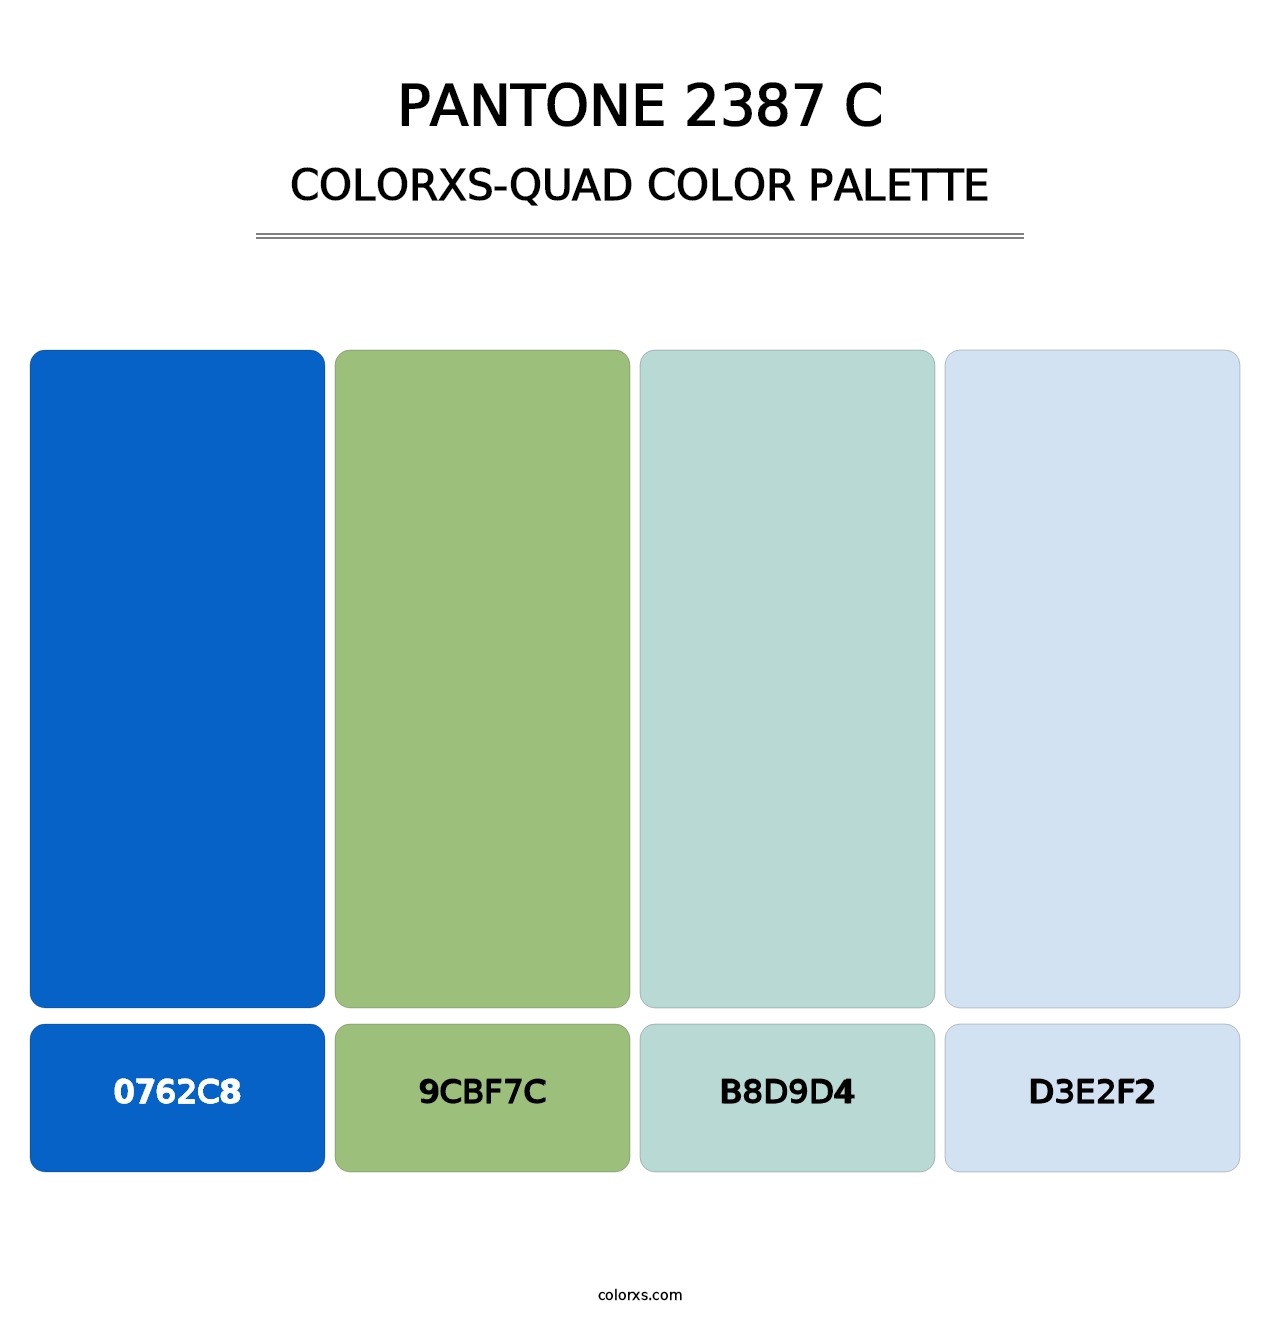 PANTONE 2387 C - Colorxs Quad Palette